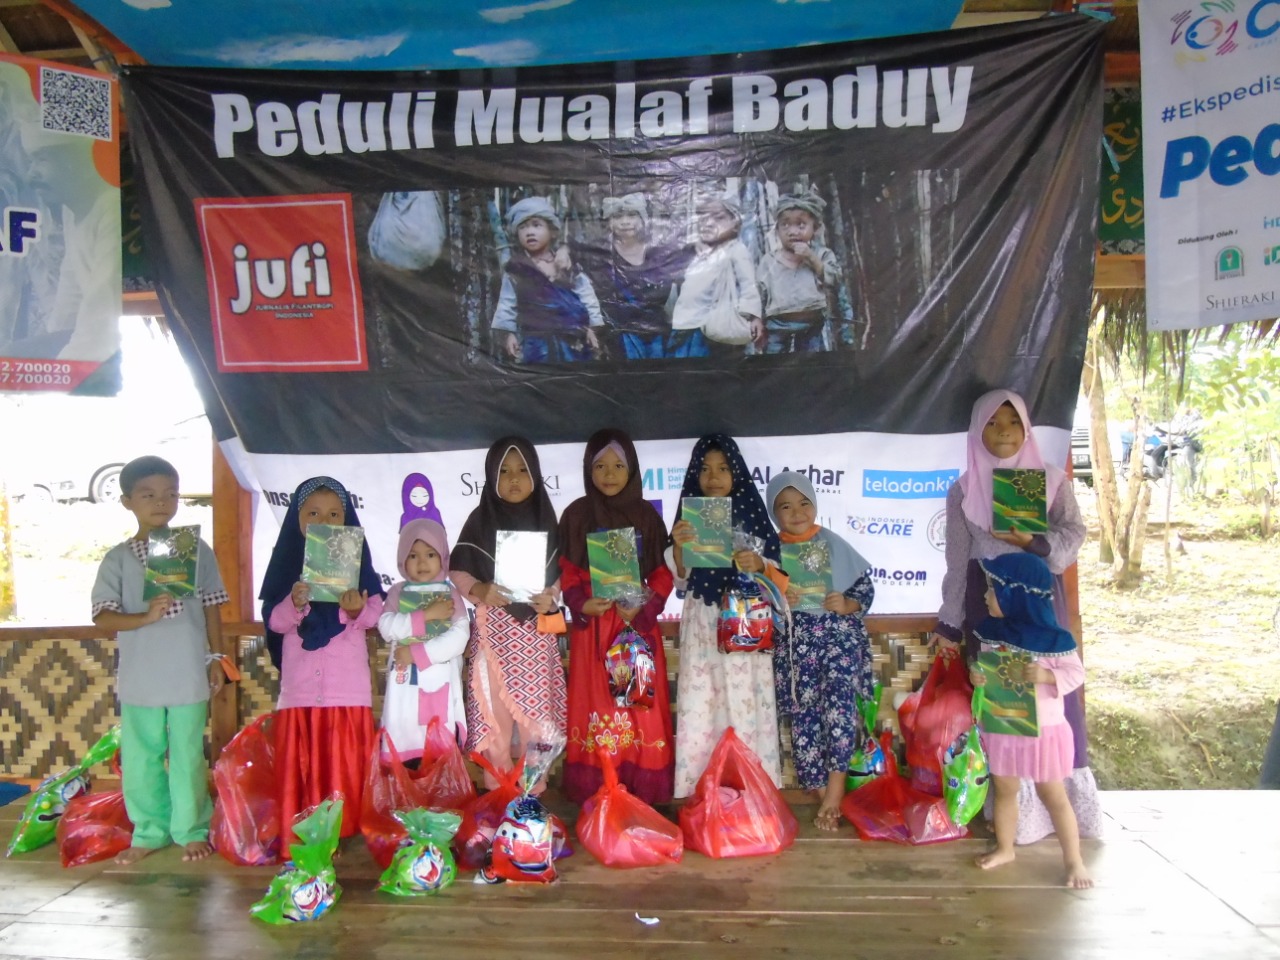 Gandeng Berbagai Pihak, Jurnalis Filantropi Indonesia Peduli Muallaf Baduy 